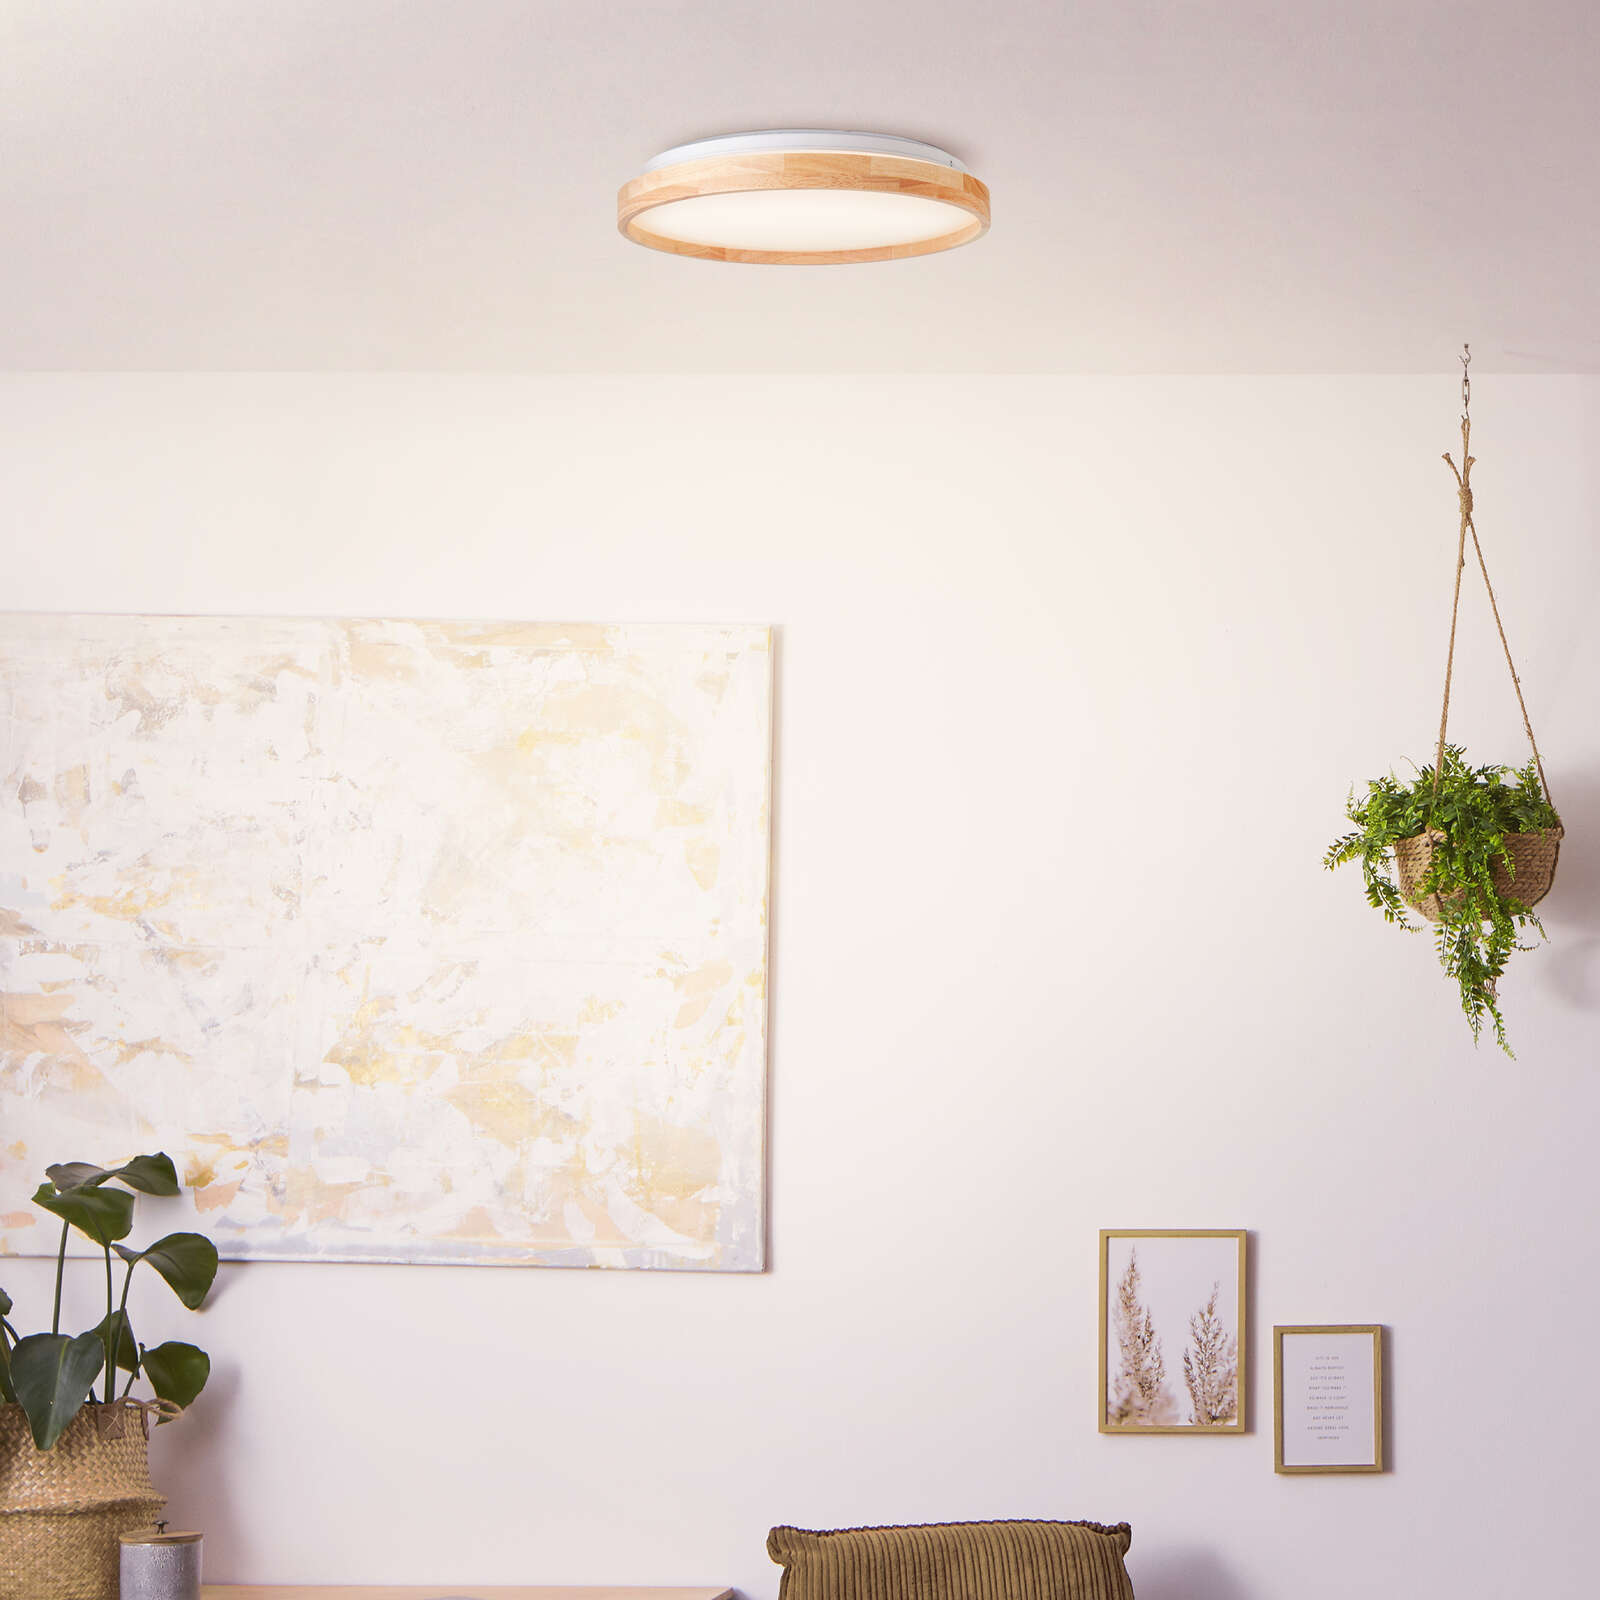             Wooden ceiling light - Alea 1 - Beige
        